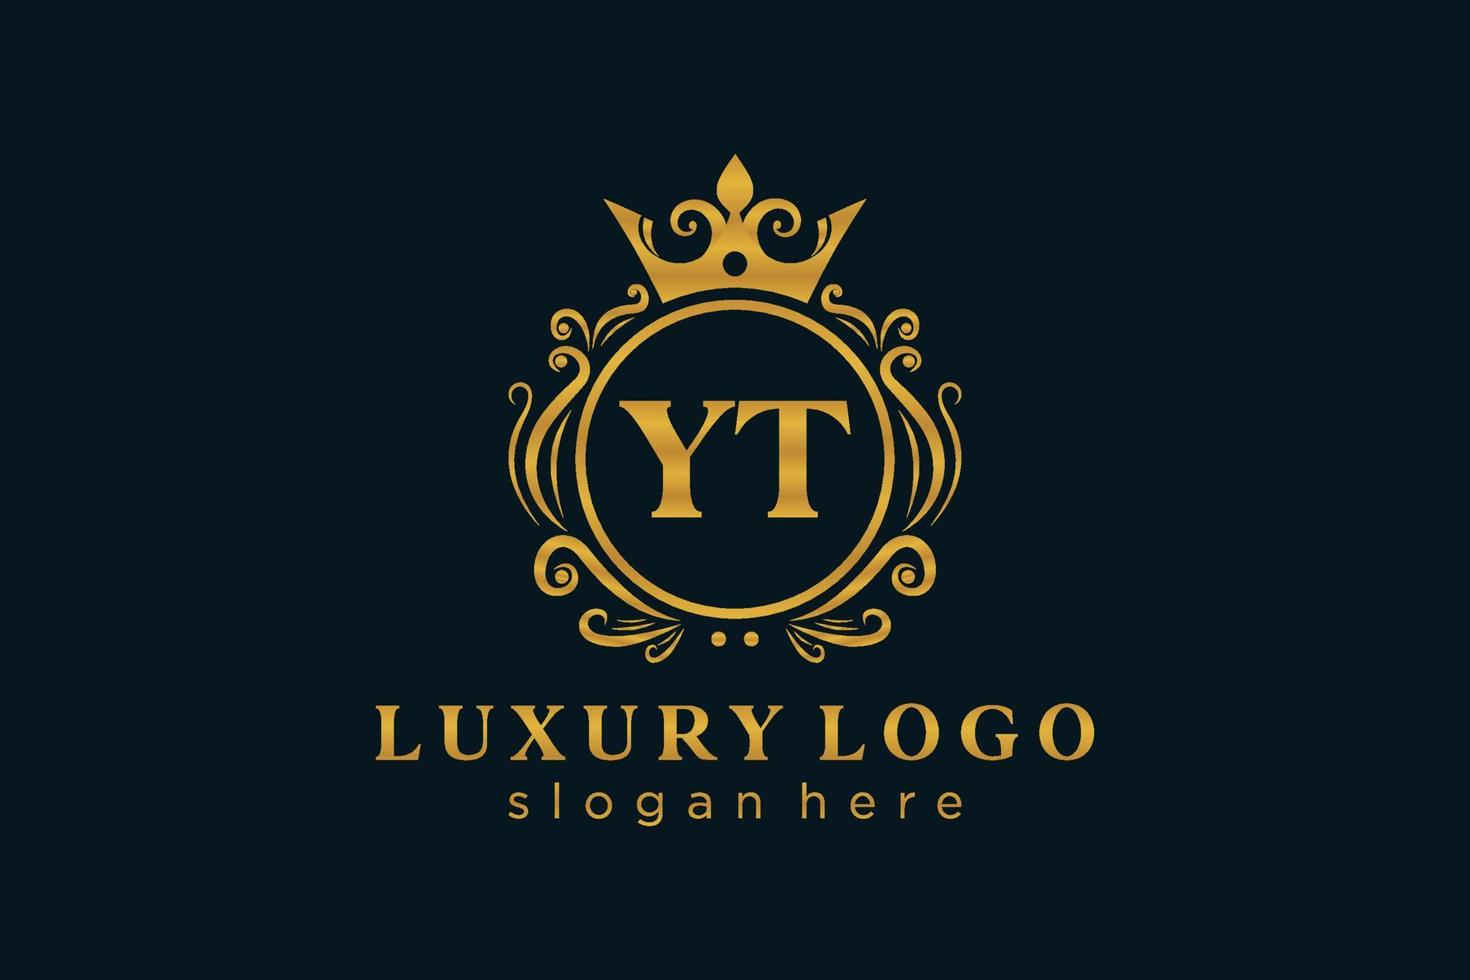 modelo de logotipo de luxo real carta inicial yt em arte vetorial para restaurante, realeza, boutique, café, hotel, heráldica, joias, moda e outras ilustrações vetoriais. vetor